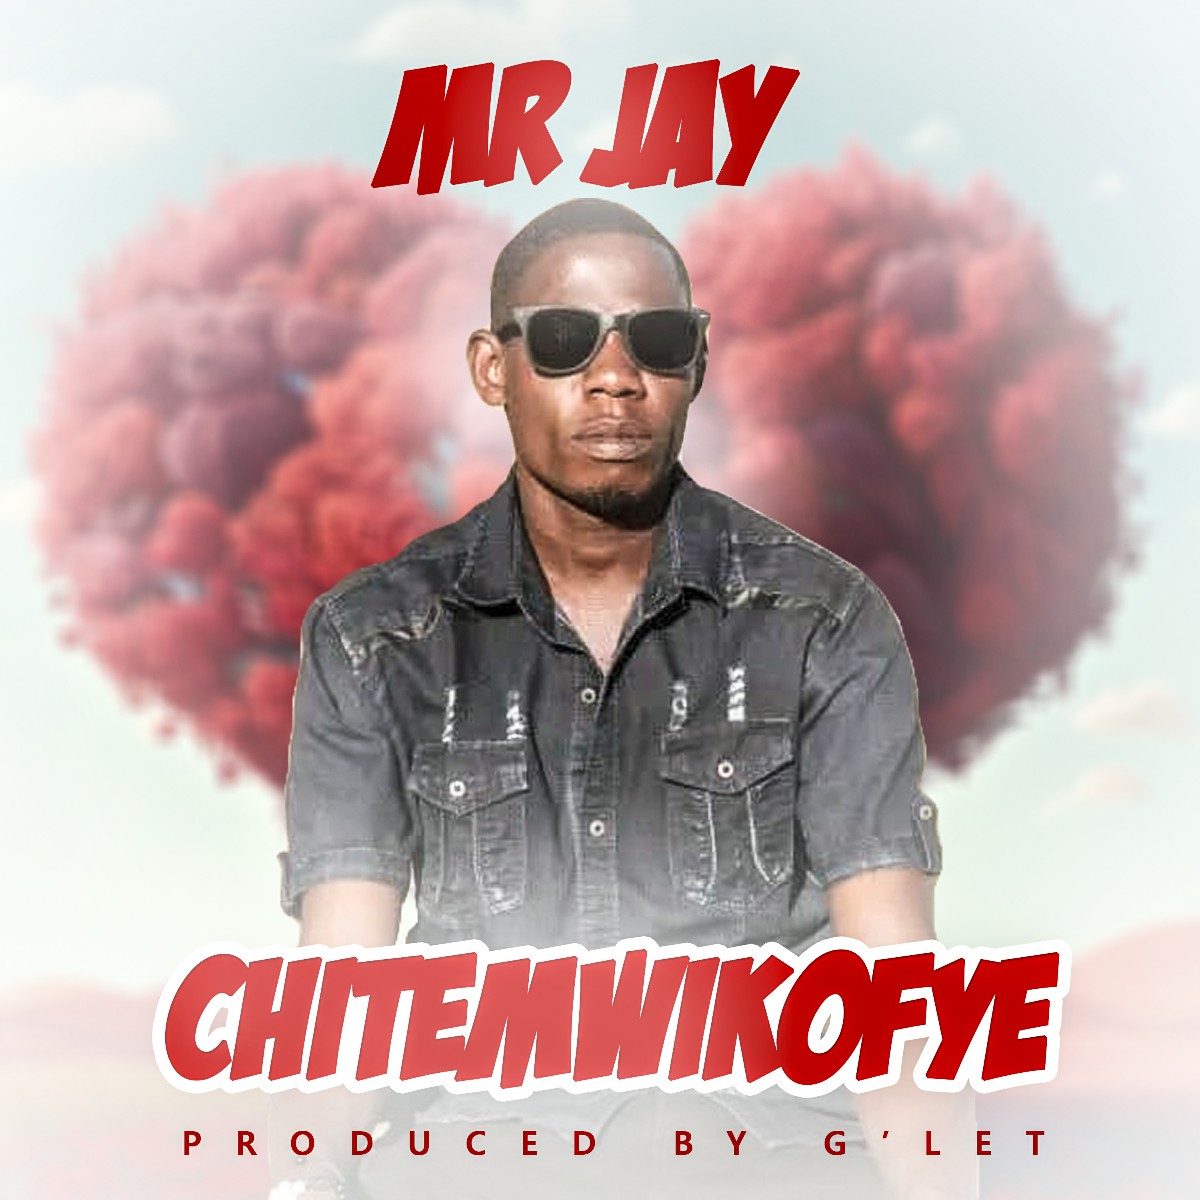 Mr Jay - Chitemwikofye (Prod. G'let)